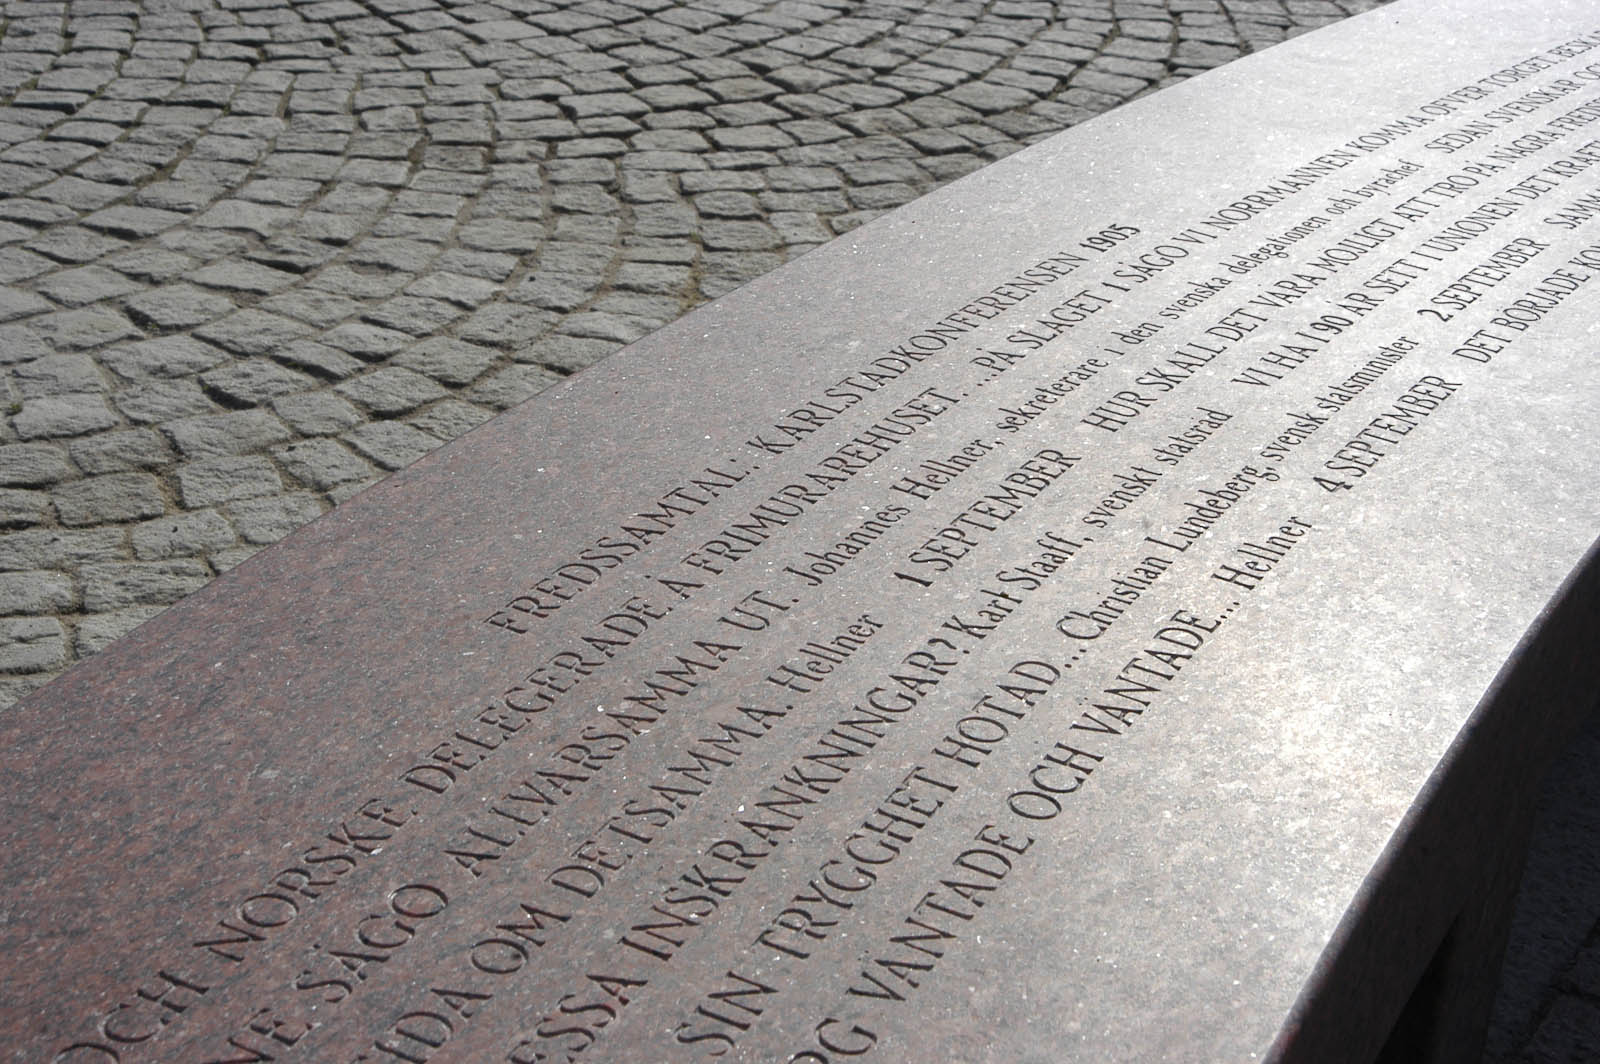 Del av gravyr på bänk. Högst upp på bänken står det: &quot;Fredssamtal: Karlstadskonferensen 1905.&quot; Jenny Holzer, For Karlstad.